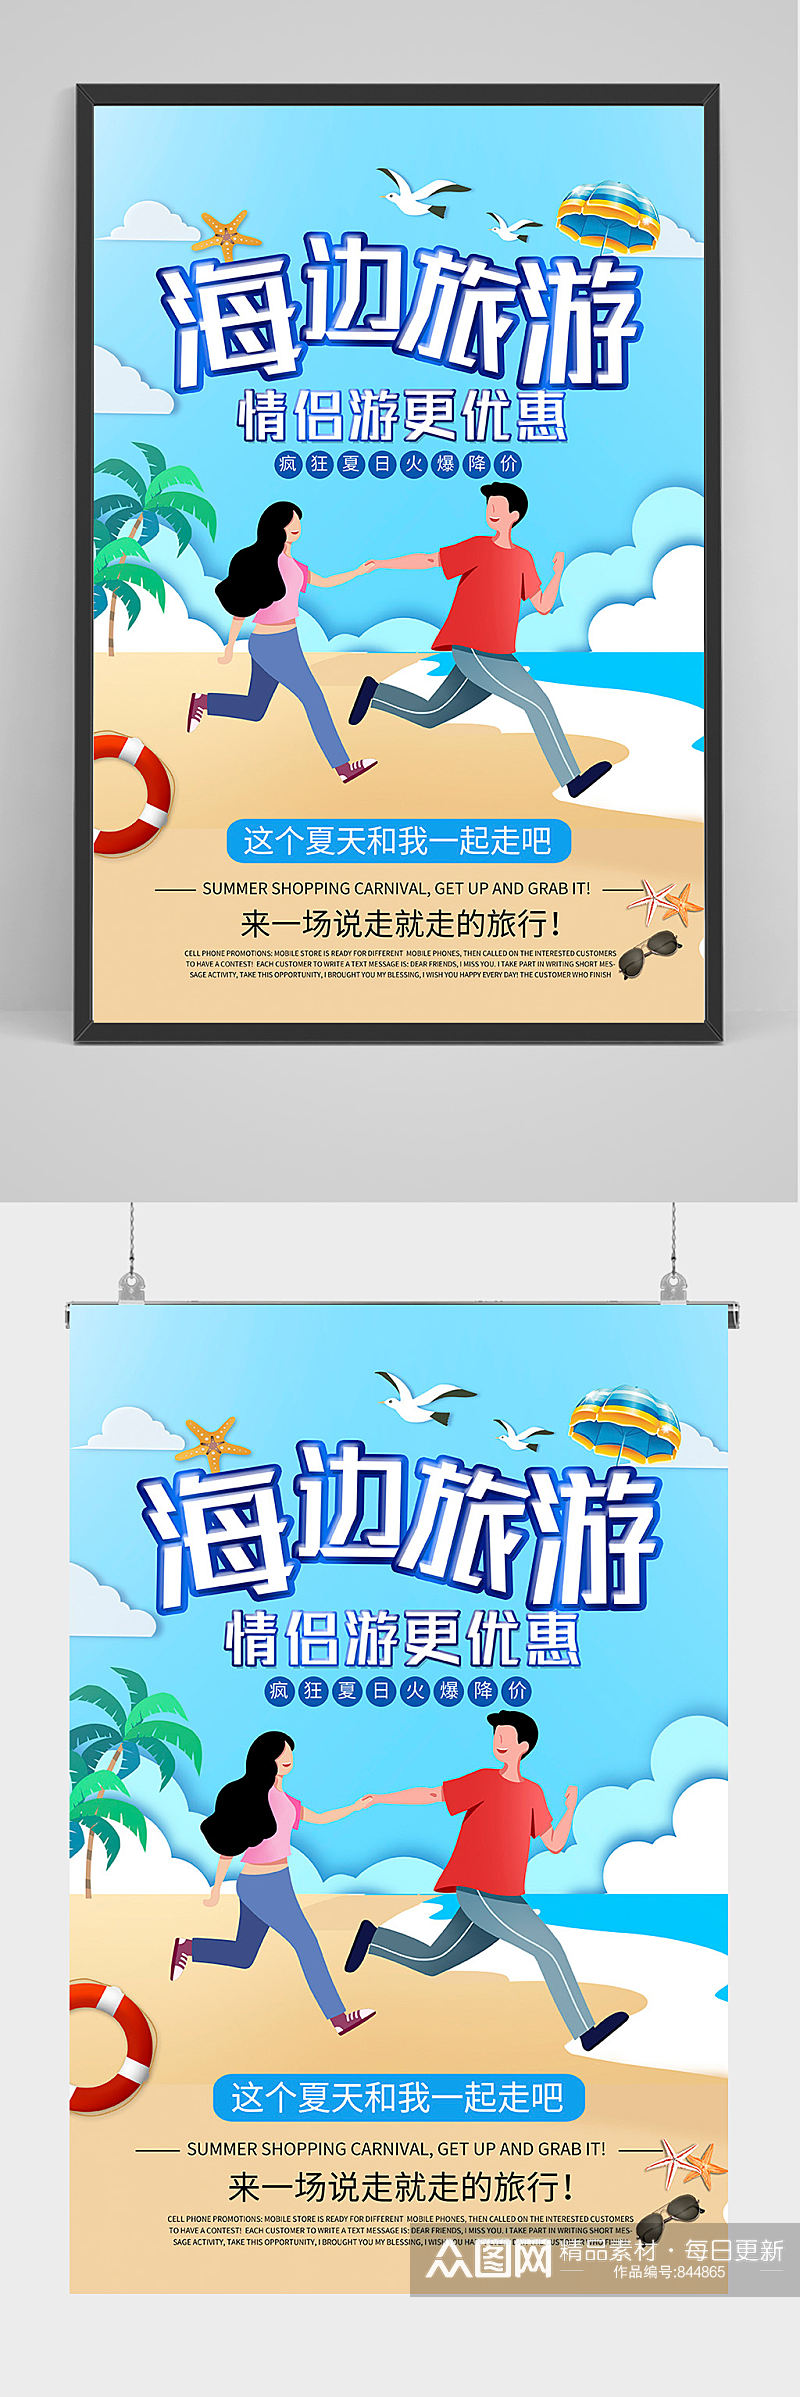 海边旅游海报设计素材